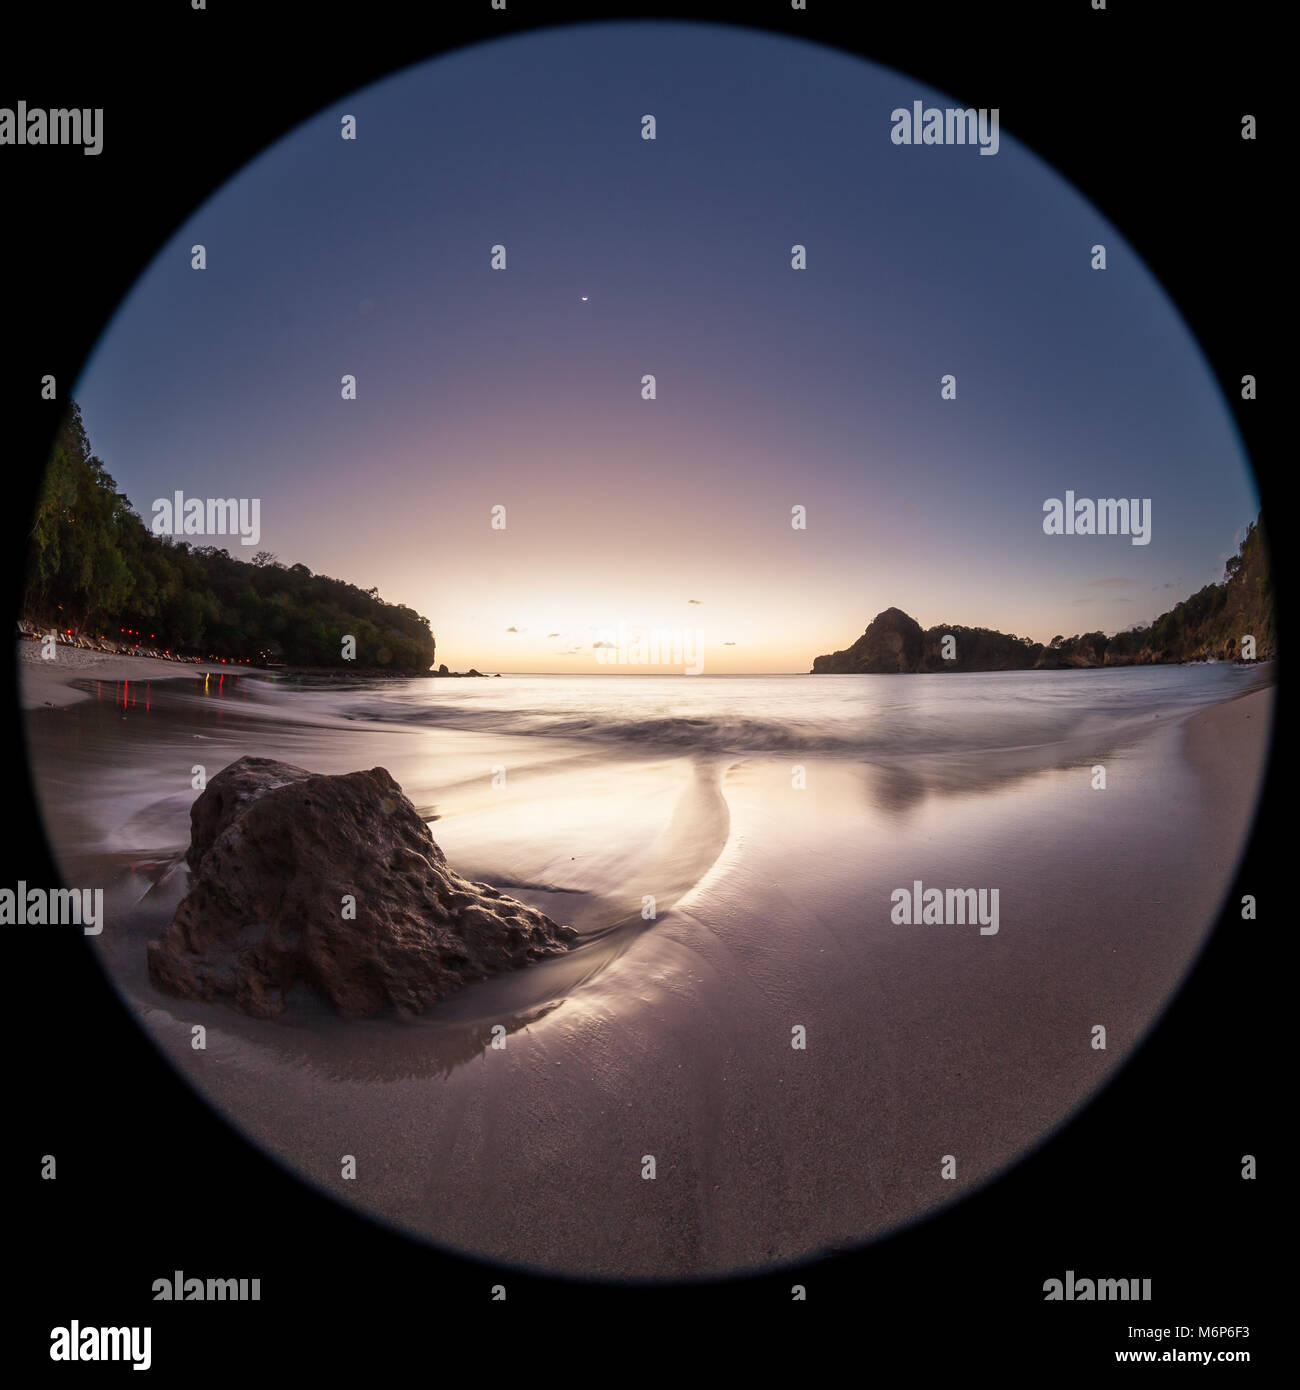 Entspannende beach Szene mit einem Fish Eye Objektiv erzeugen Kreisförmige Super Wide Angle View bei Sonnenuntergang mit hellen blauen Himmel Stockfoto